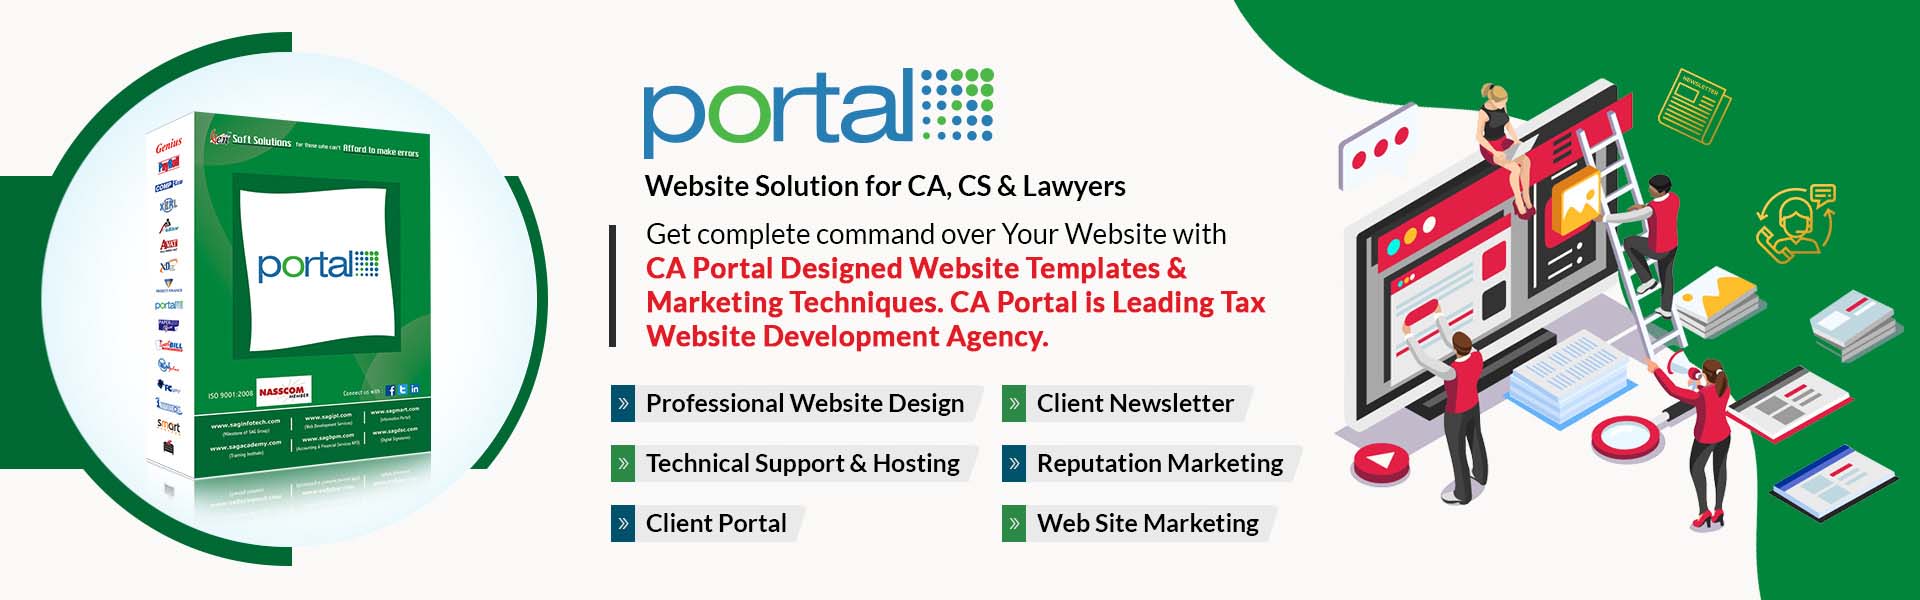 CA Portal Features